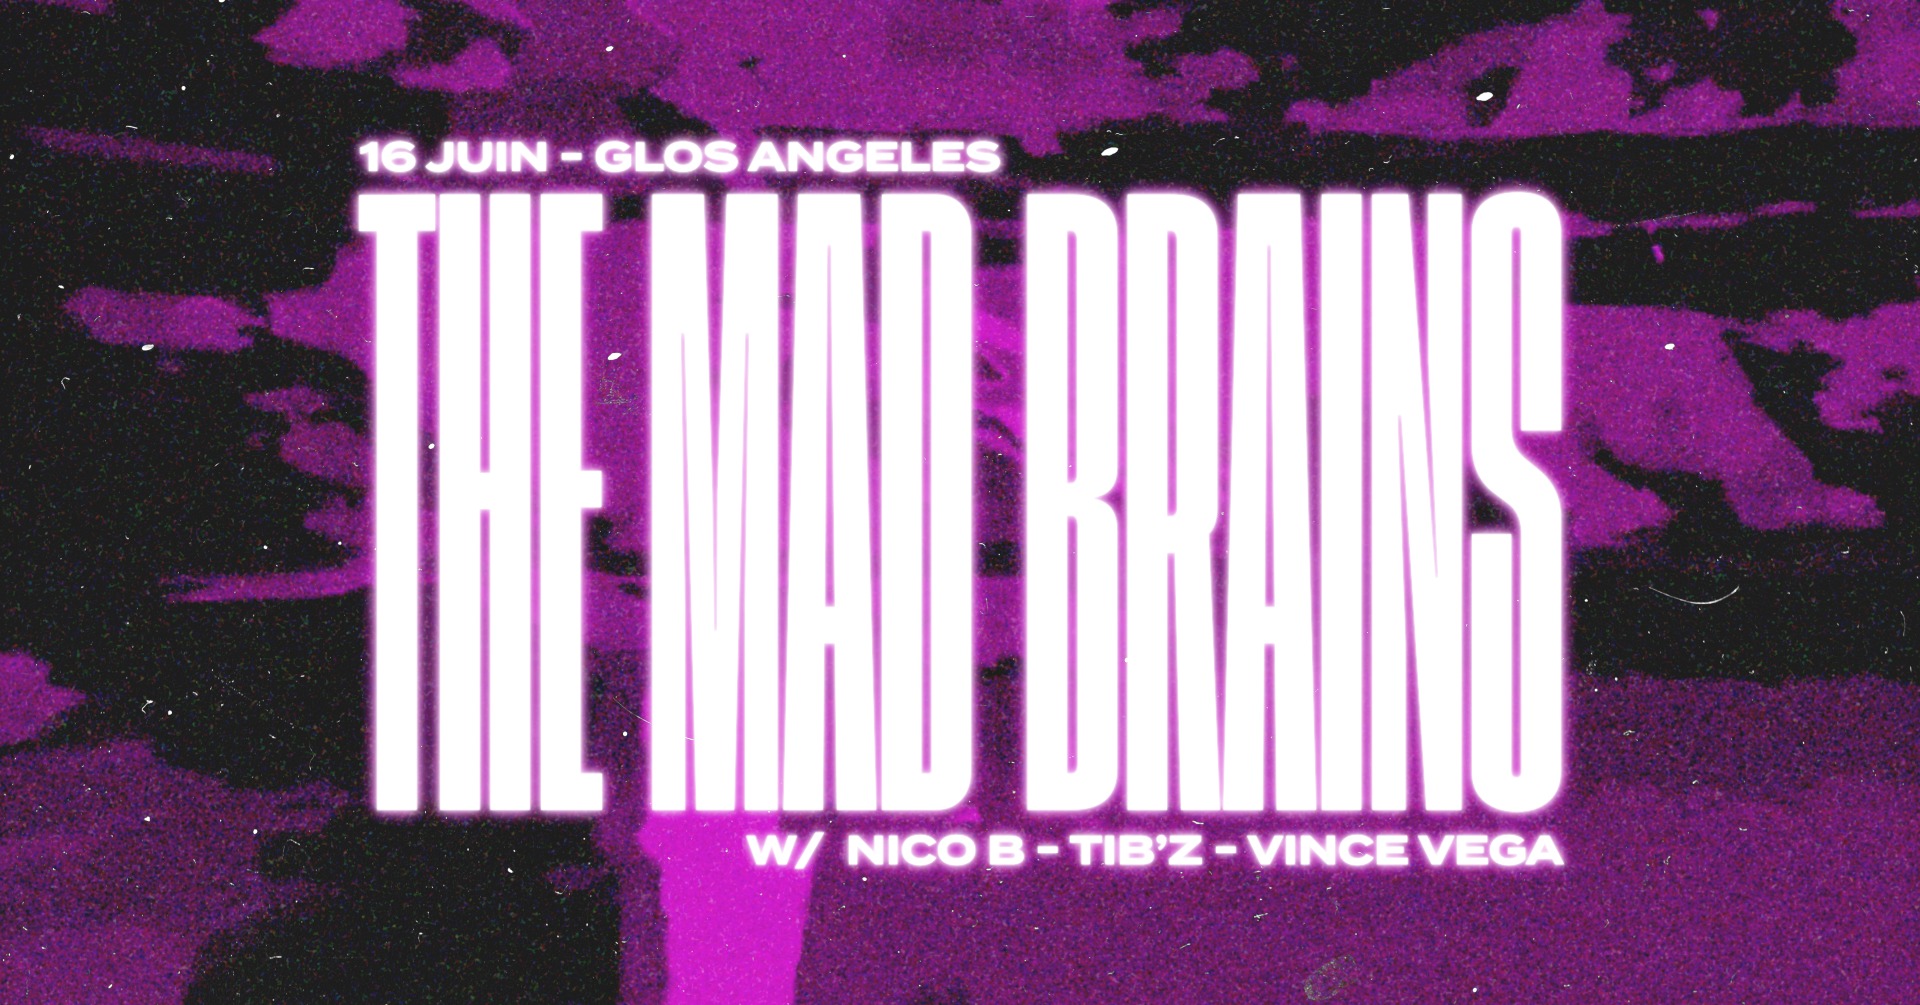 Glos Angeles x M.A.D Brains, évènement propulsé par M.A.D Brains, qui aura lieu le 16 juin 2023